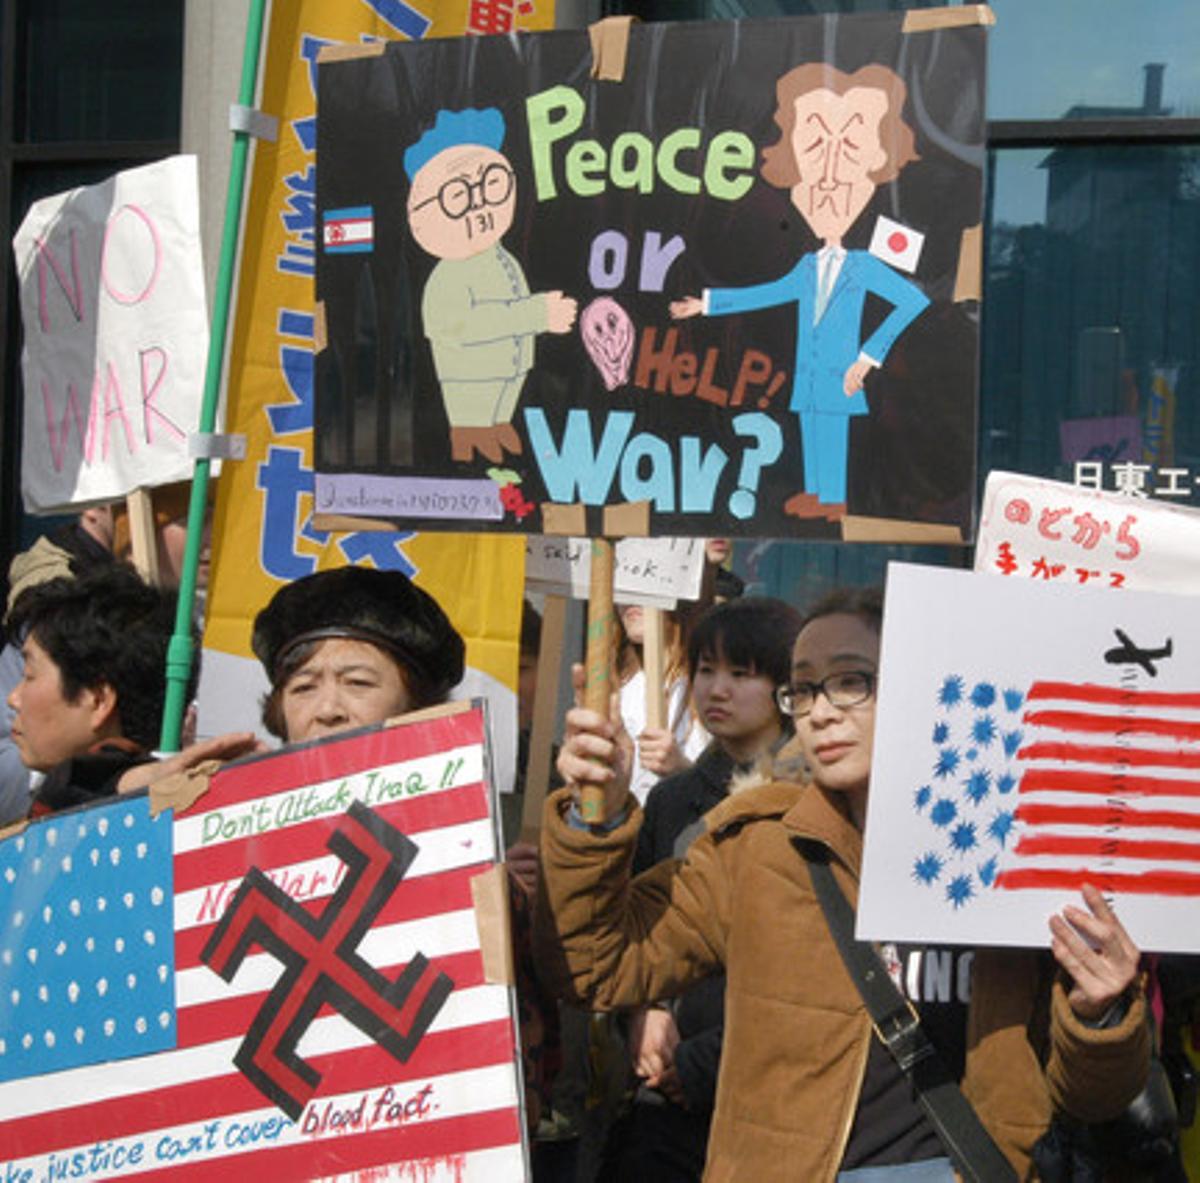 A la convocatoria antibelicista en Tokio respondieron cerca de 25.000 personas, según las cifras de los organizadores. La protesta tuvo lugar delante de la embajada estadounidense. En la foto, un manifestante levanta una pancarta que muestra al primer ministro japonés, Junichiro Koizumi (derecha), y al líder de Corea del Norte, Kim Jong II, al lado de una frase que dice: ’¡Paz o ayuda! ¿Guerra?’. El Gobierno japonés que encabezaba Koizumi no veía con buenos ojos la voluntad de Estados Unidos de atacar militarmente a Irak.